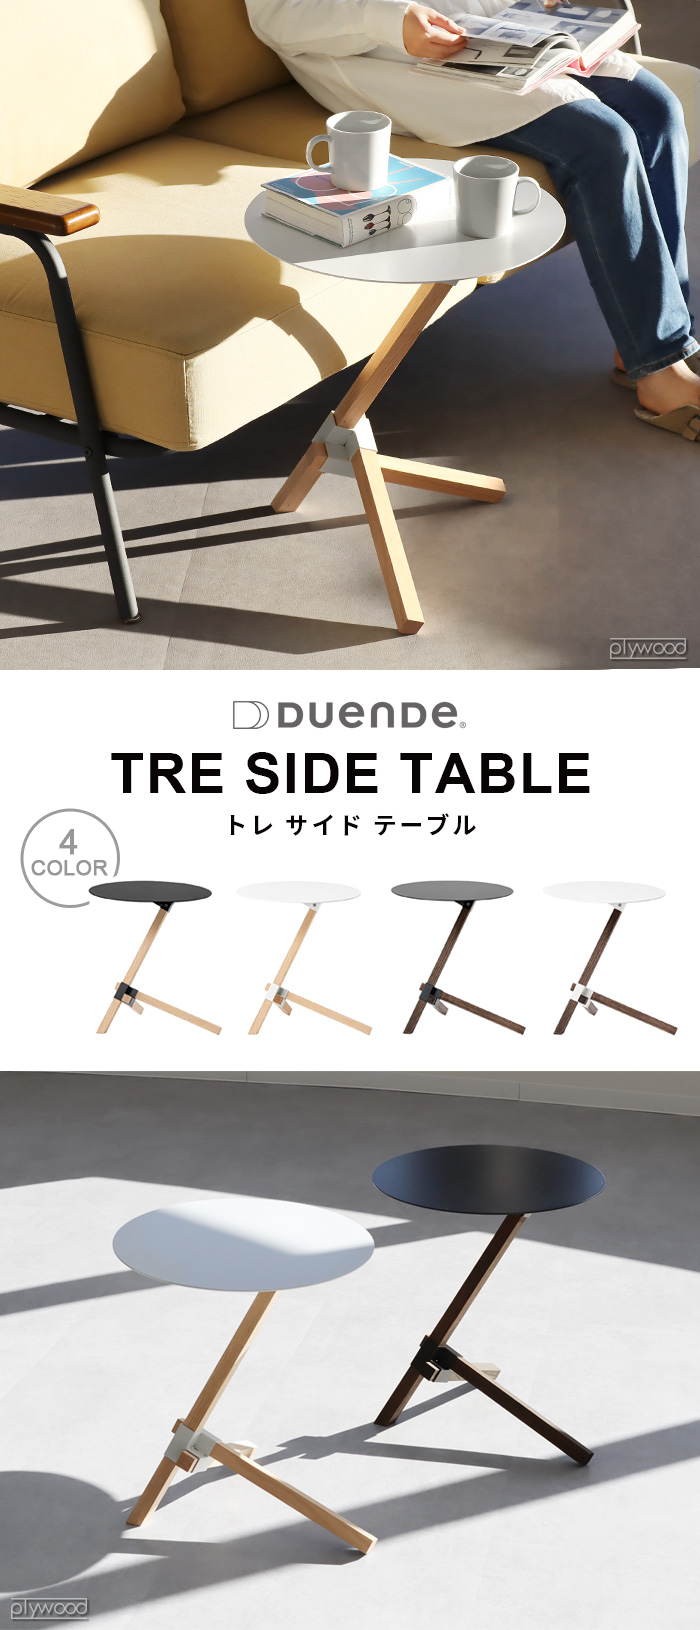 DUENDE TRE SIDE TABLE デュエンデ トレ サイド テーブル DU0210